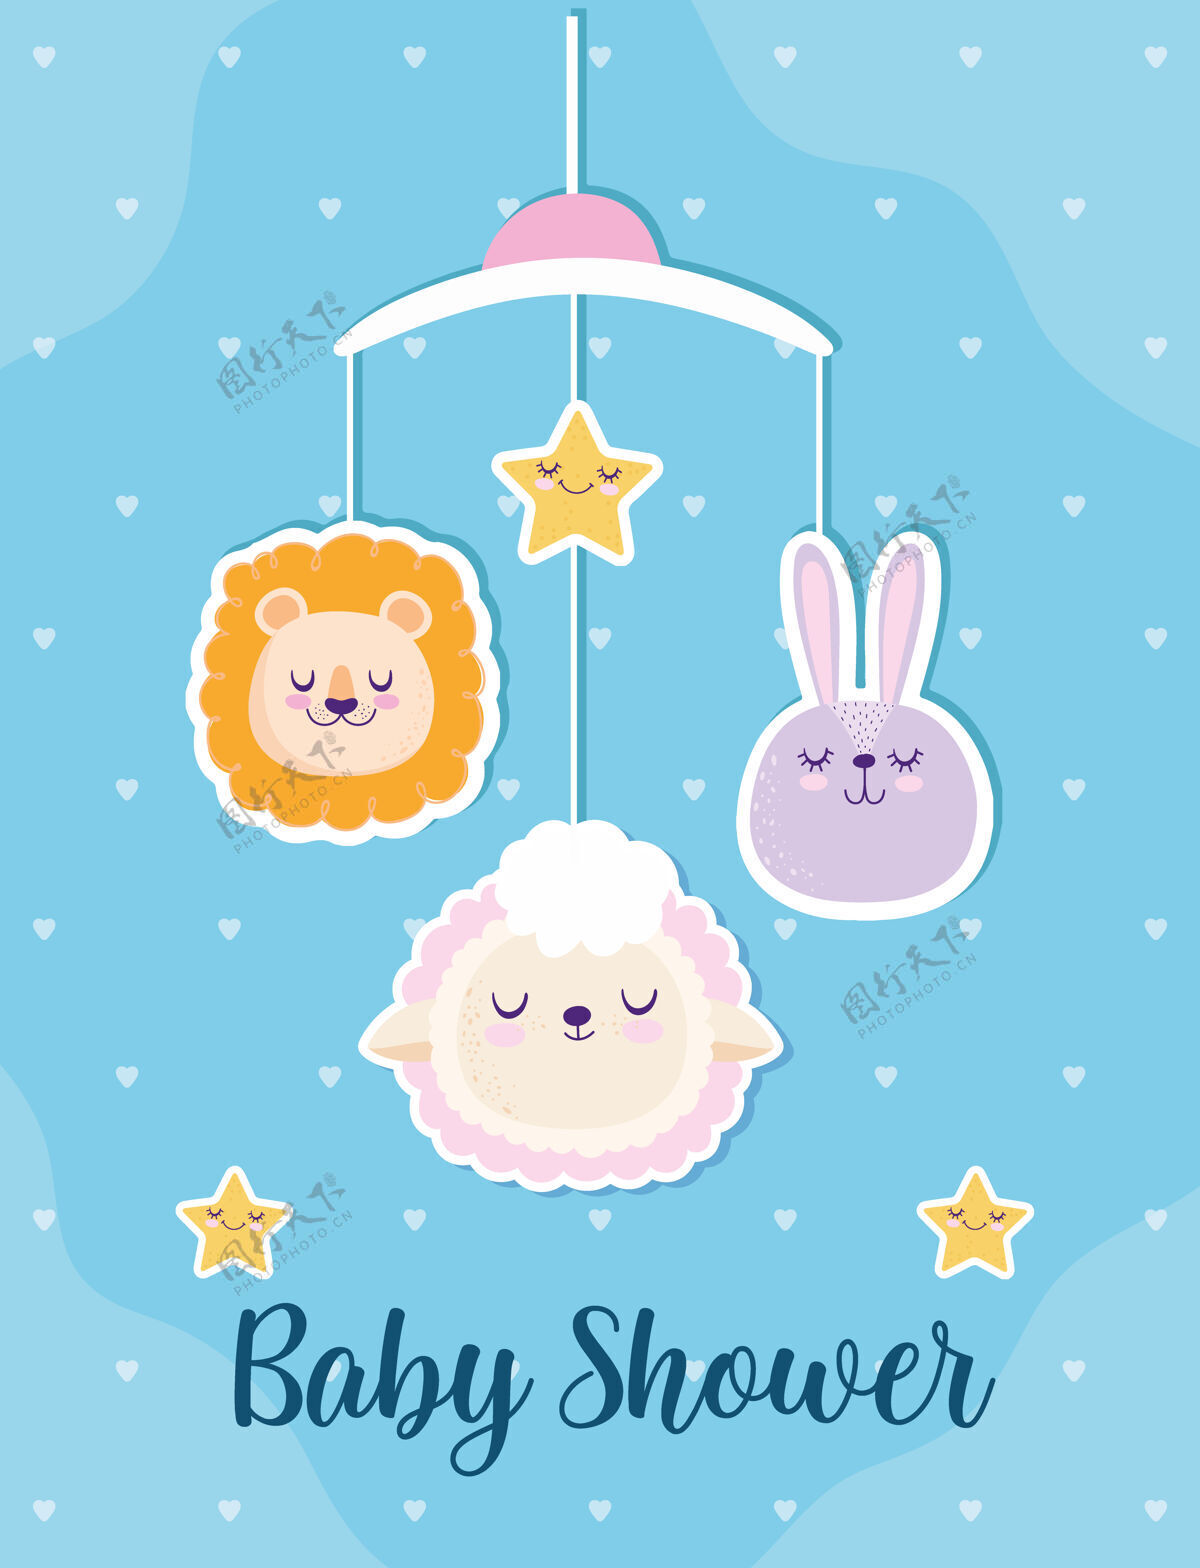 快乐宝宝淋浴可爱的狮子兔和绵羊移动装饰矢量插图孩子淋浴童年